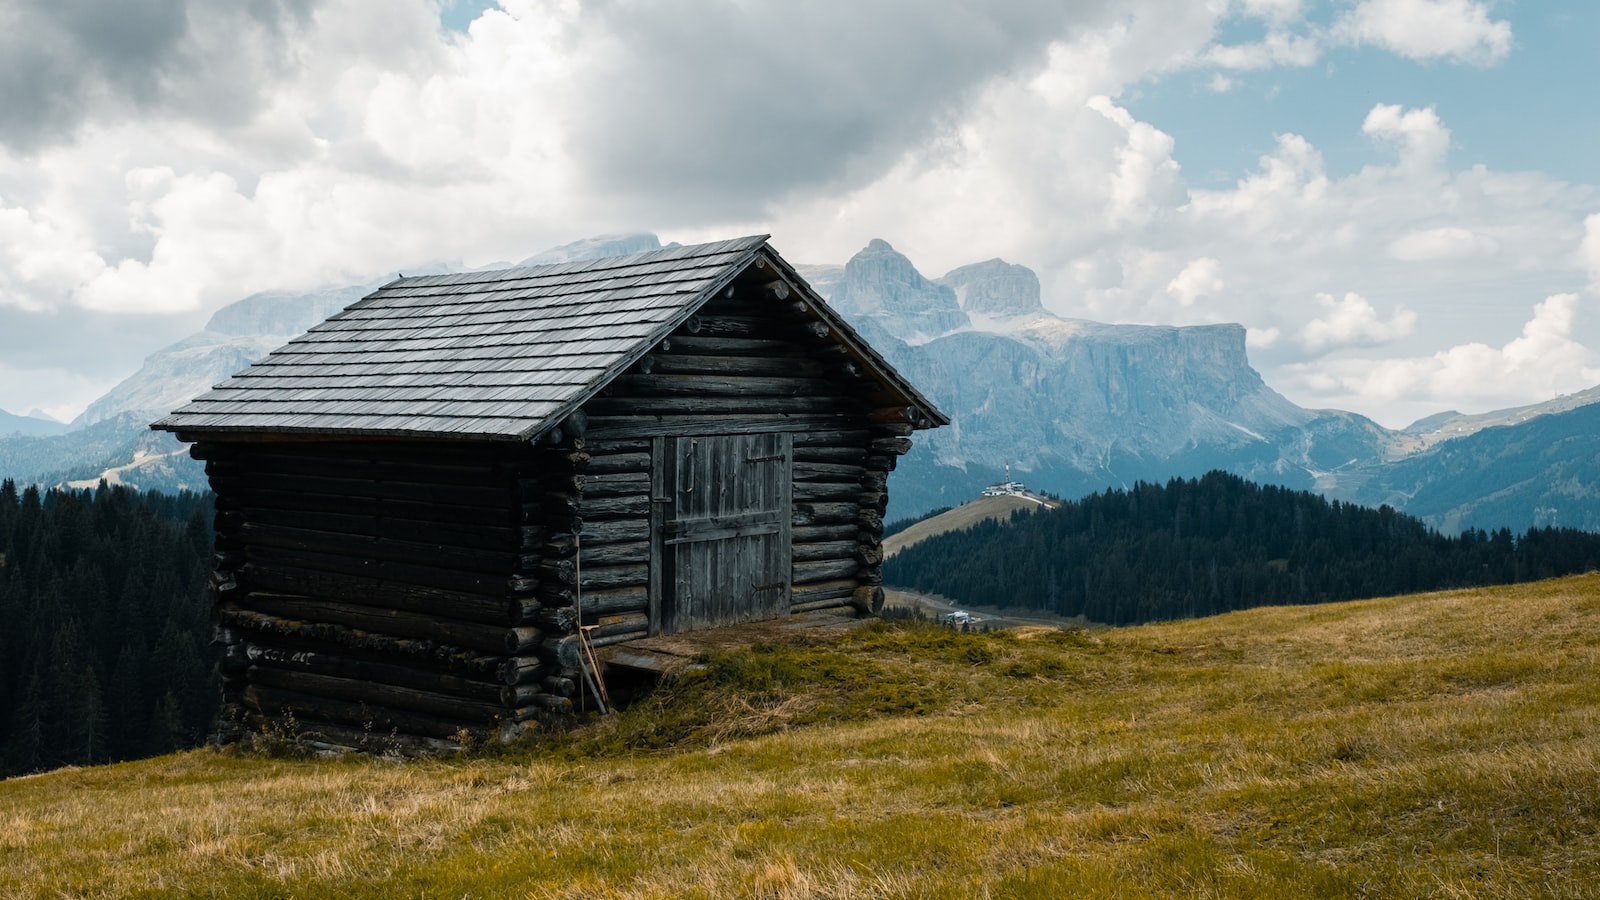 The Majestic Austrian Alps: A Tale of Adventure